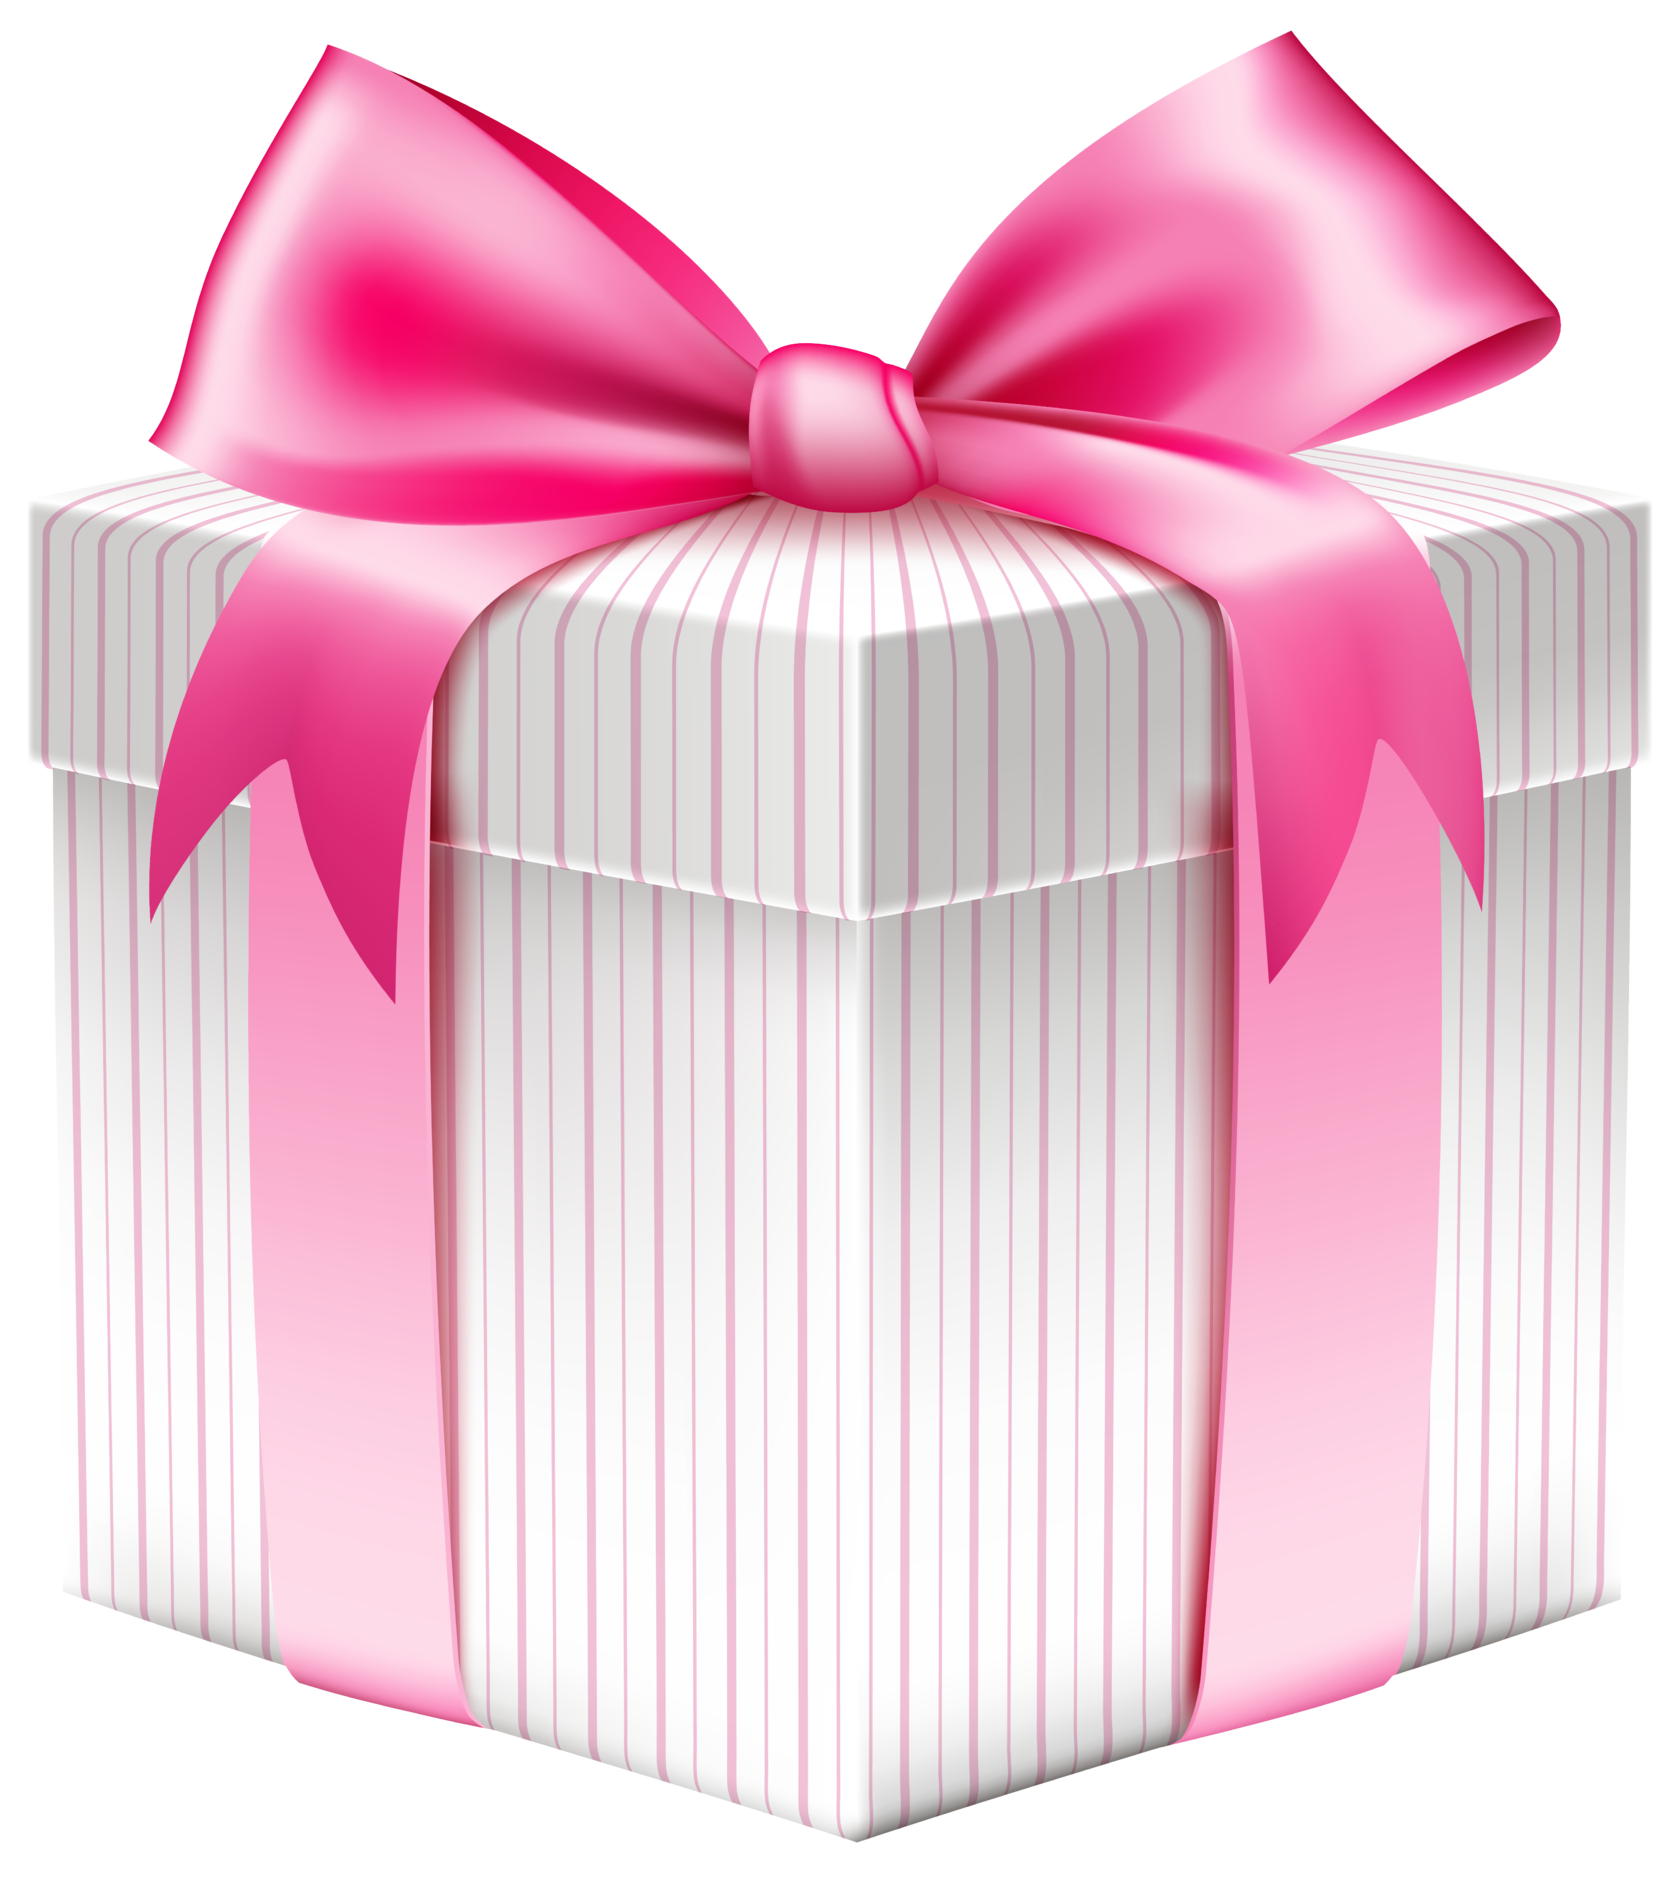 Gift picture. Коробка подарок с бантом. Коробка для подарка. Подарочная коробка с бантиком. Подарок розовый.